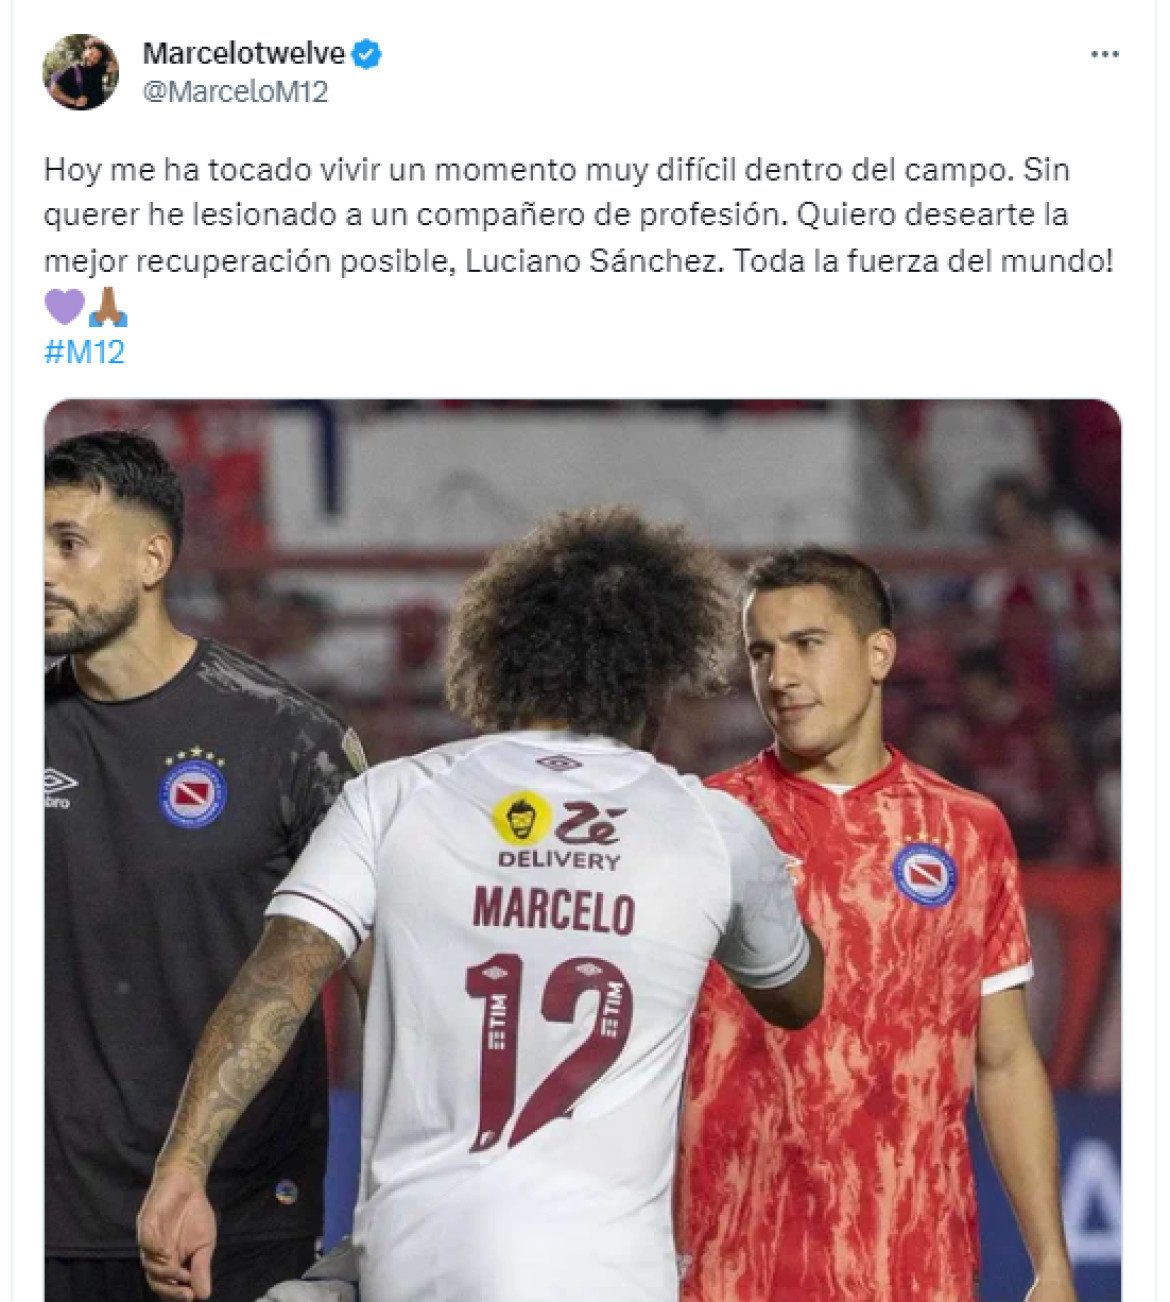 El mensaje de Marcelo tras la lesión de Luciano Sánchez. Foto: Captura de pantalla Twitter.